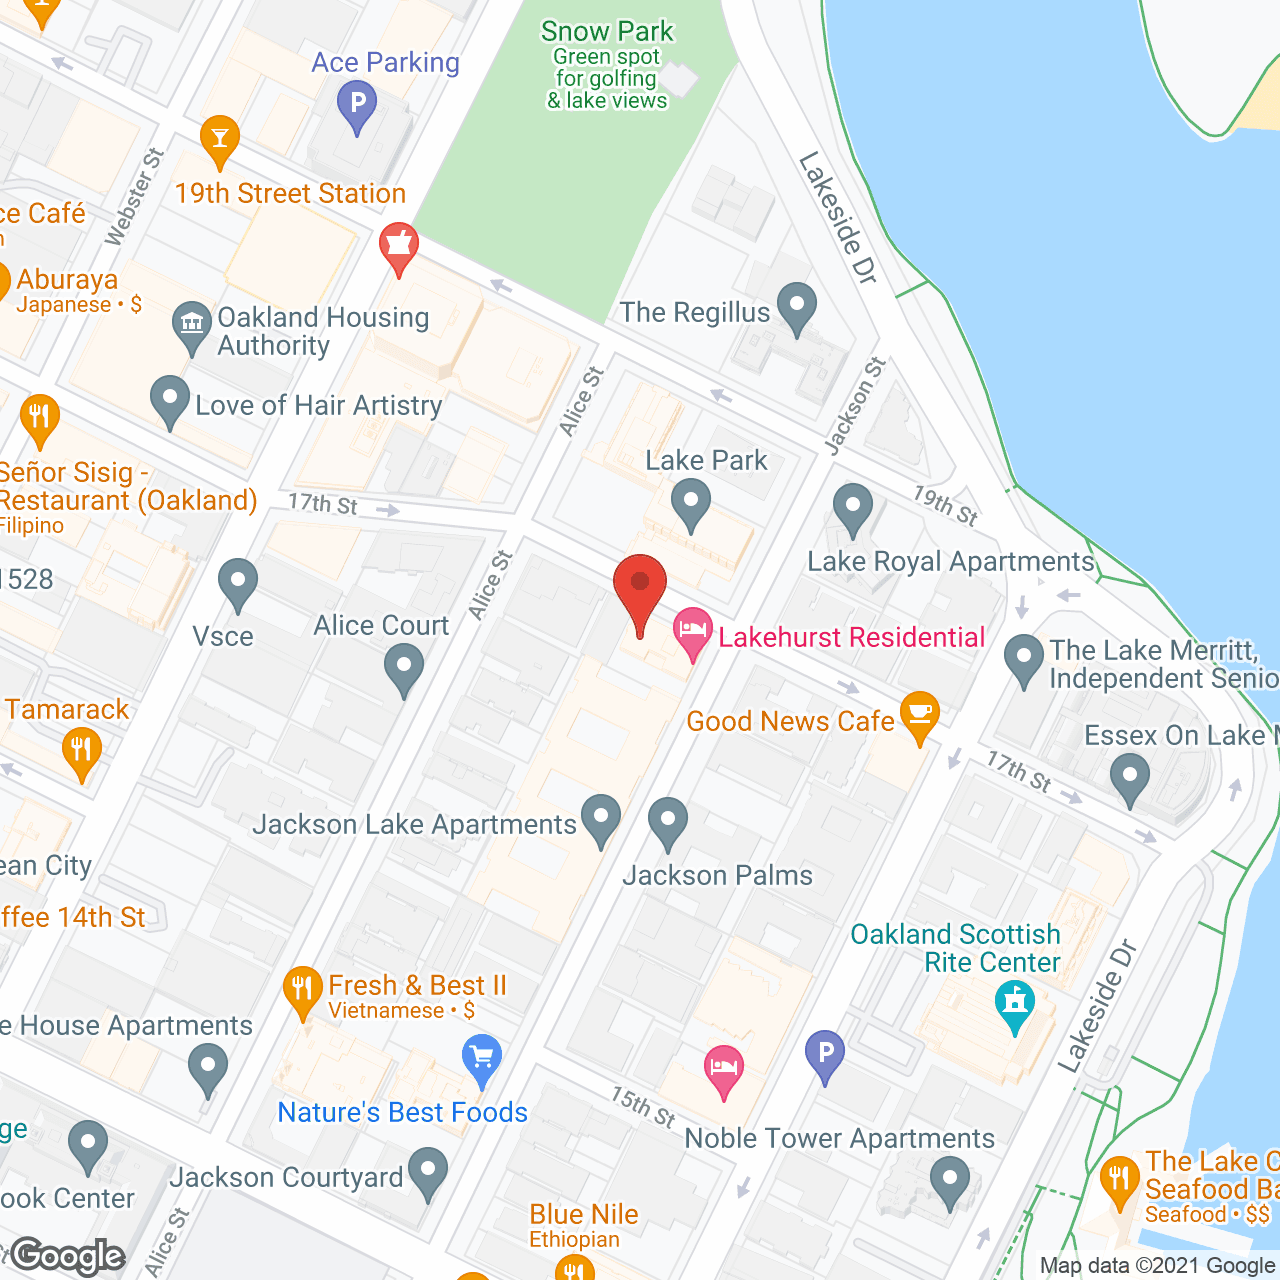 Lakehurst Residential Hotel in google map